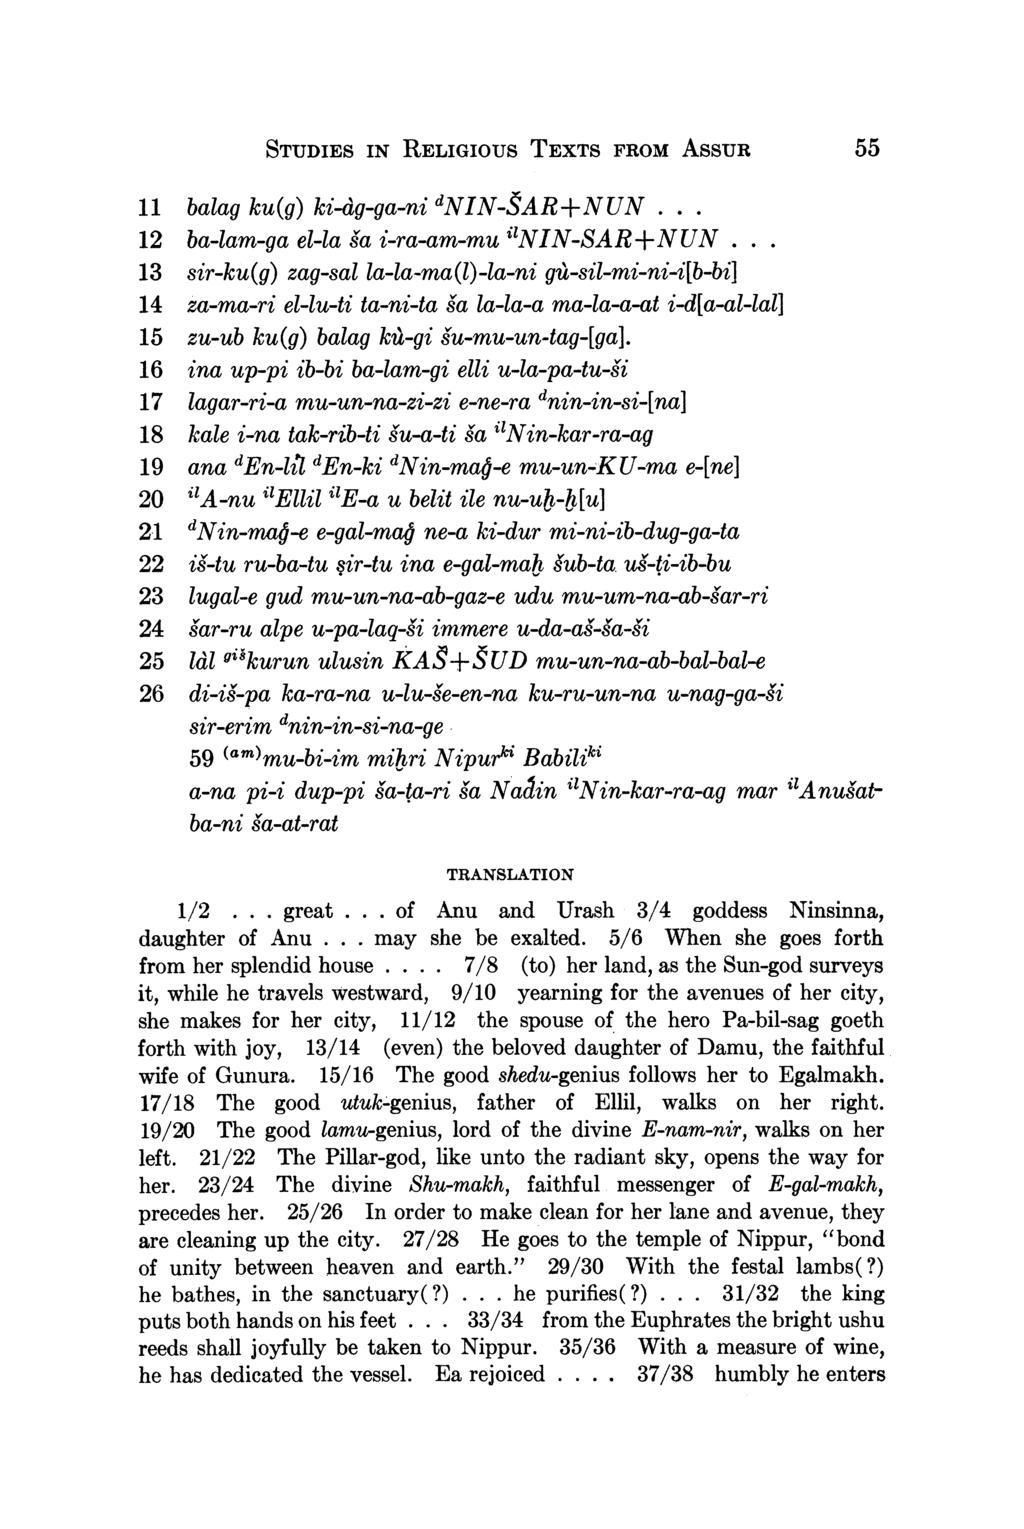 STUDIES IN RELIGIOUS TEXTS FROM ASSUR 55 11 balag ku(g) ki-dg-ga-ni dnin-sar+nun... 12 ba-lam-ga el-la la i-ra-am-mu "anin-sar+nun.